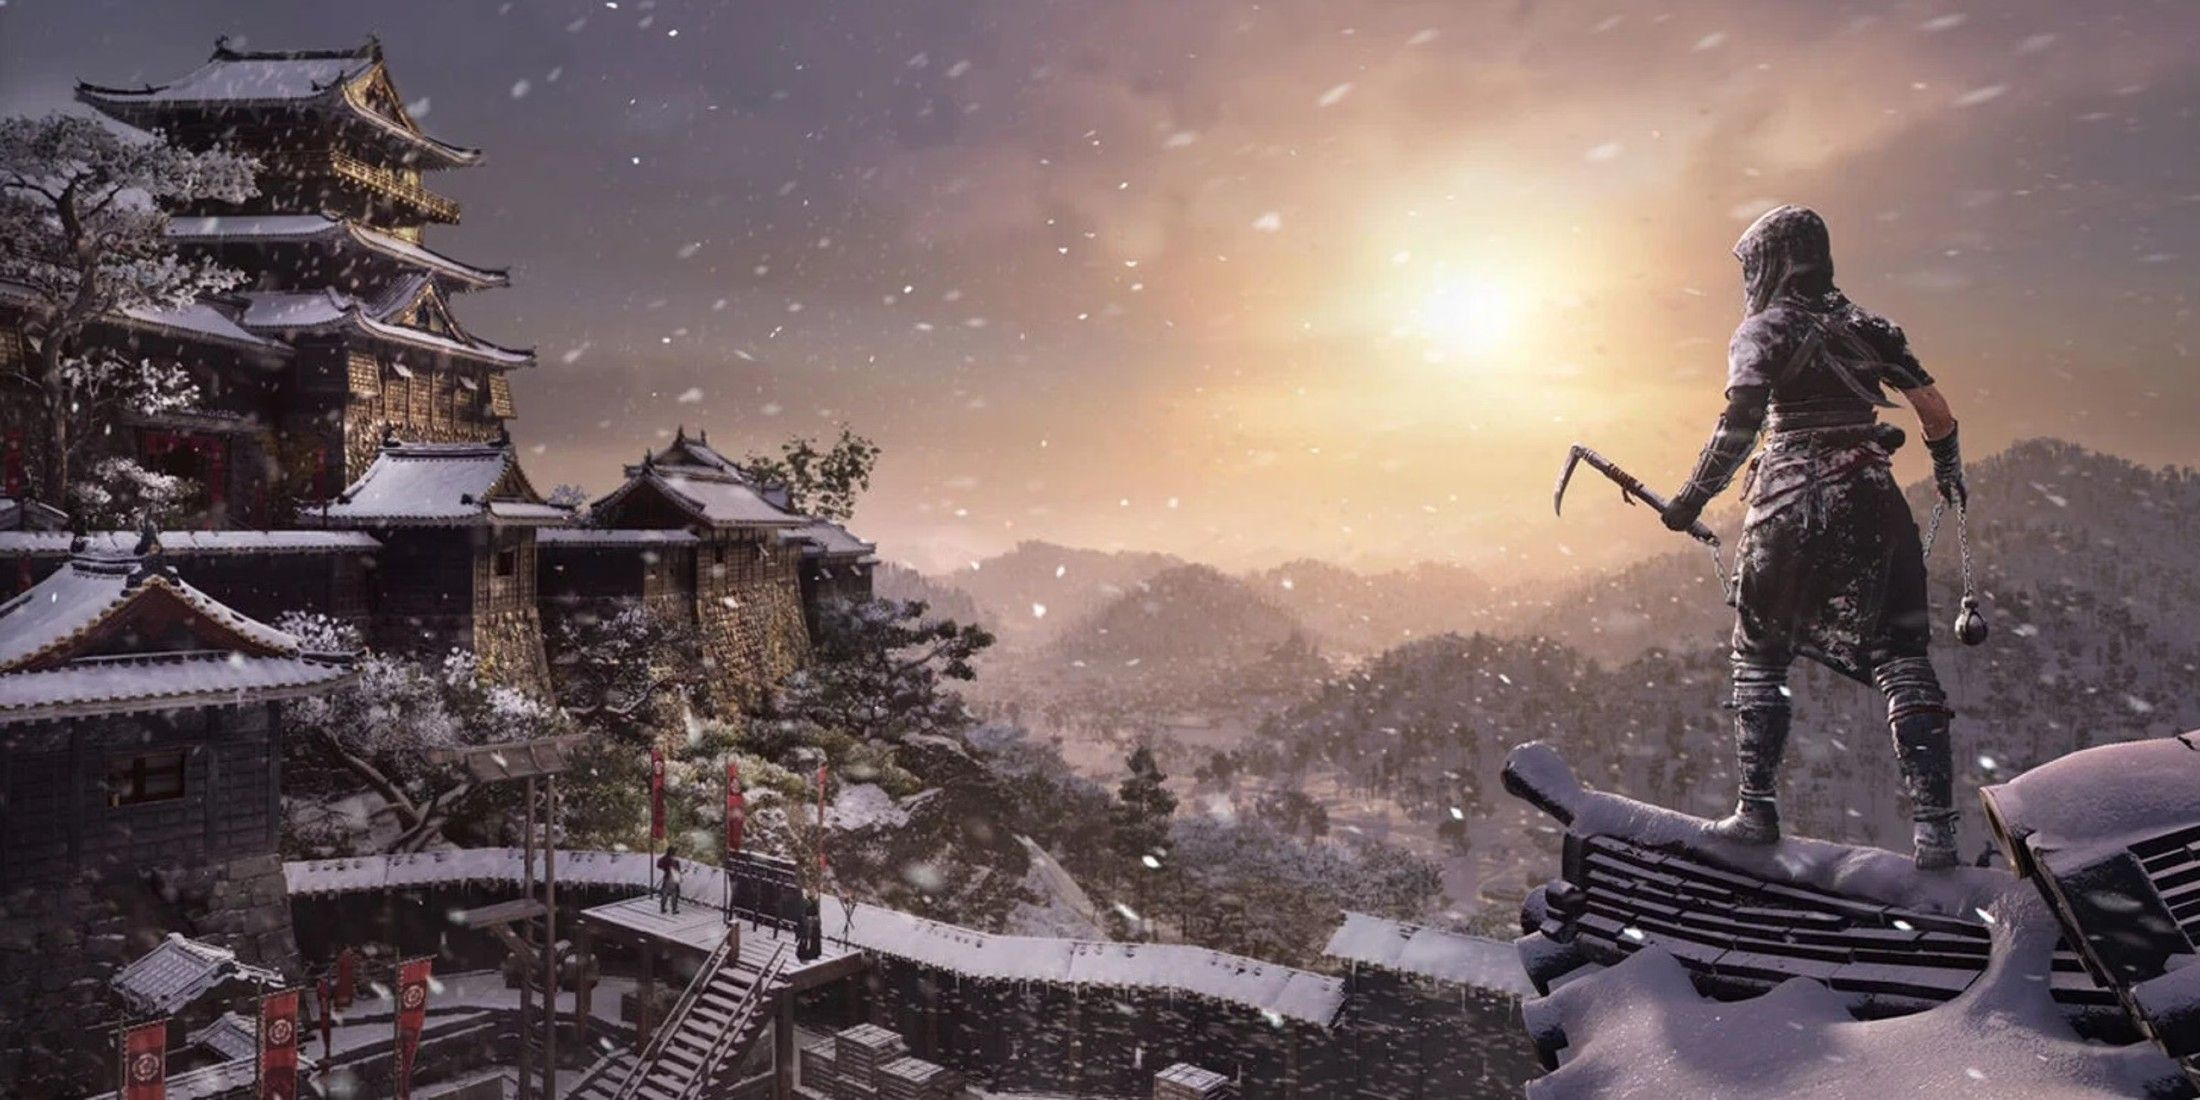 Разработчики Assassin’s Creed Shadows подробно рассказывают о преимуществах поездки в Японию спустя столько времени